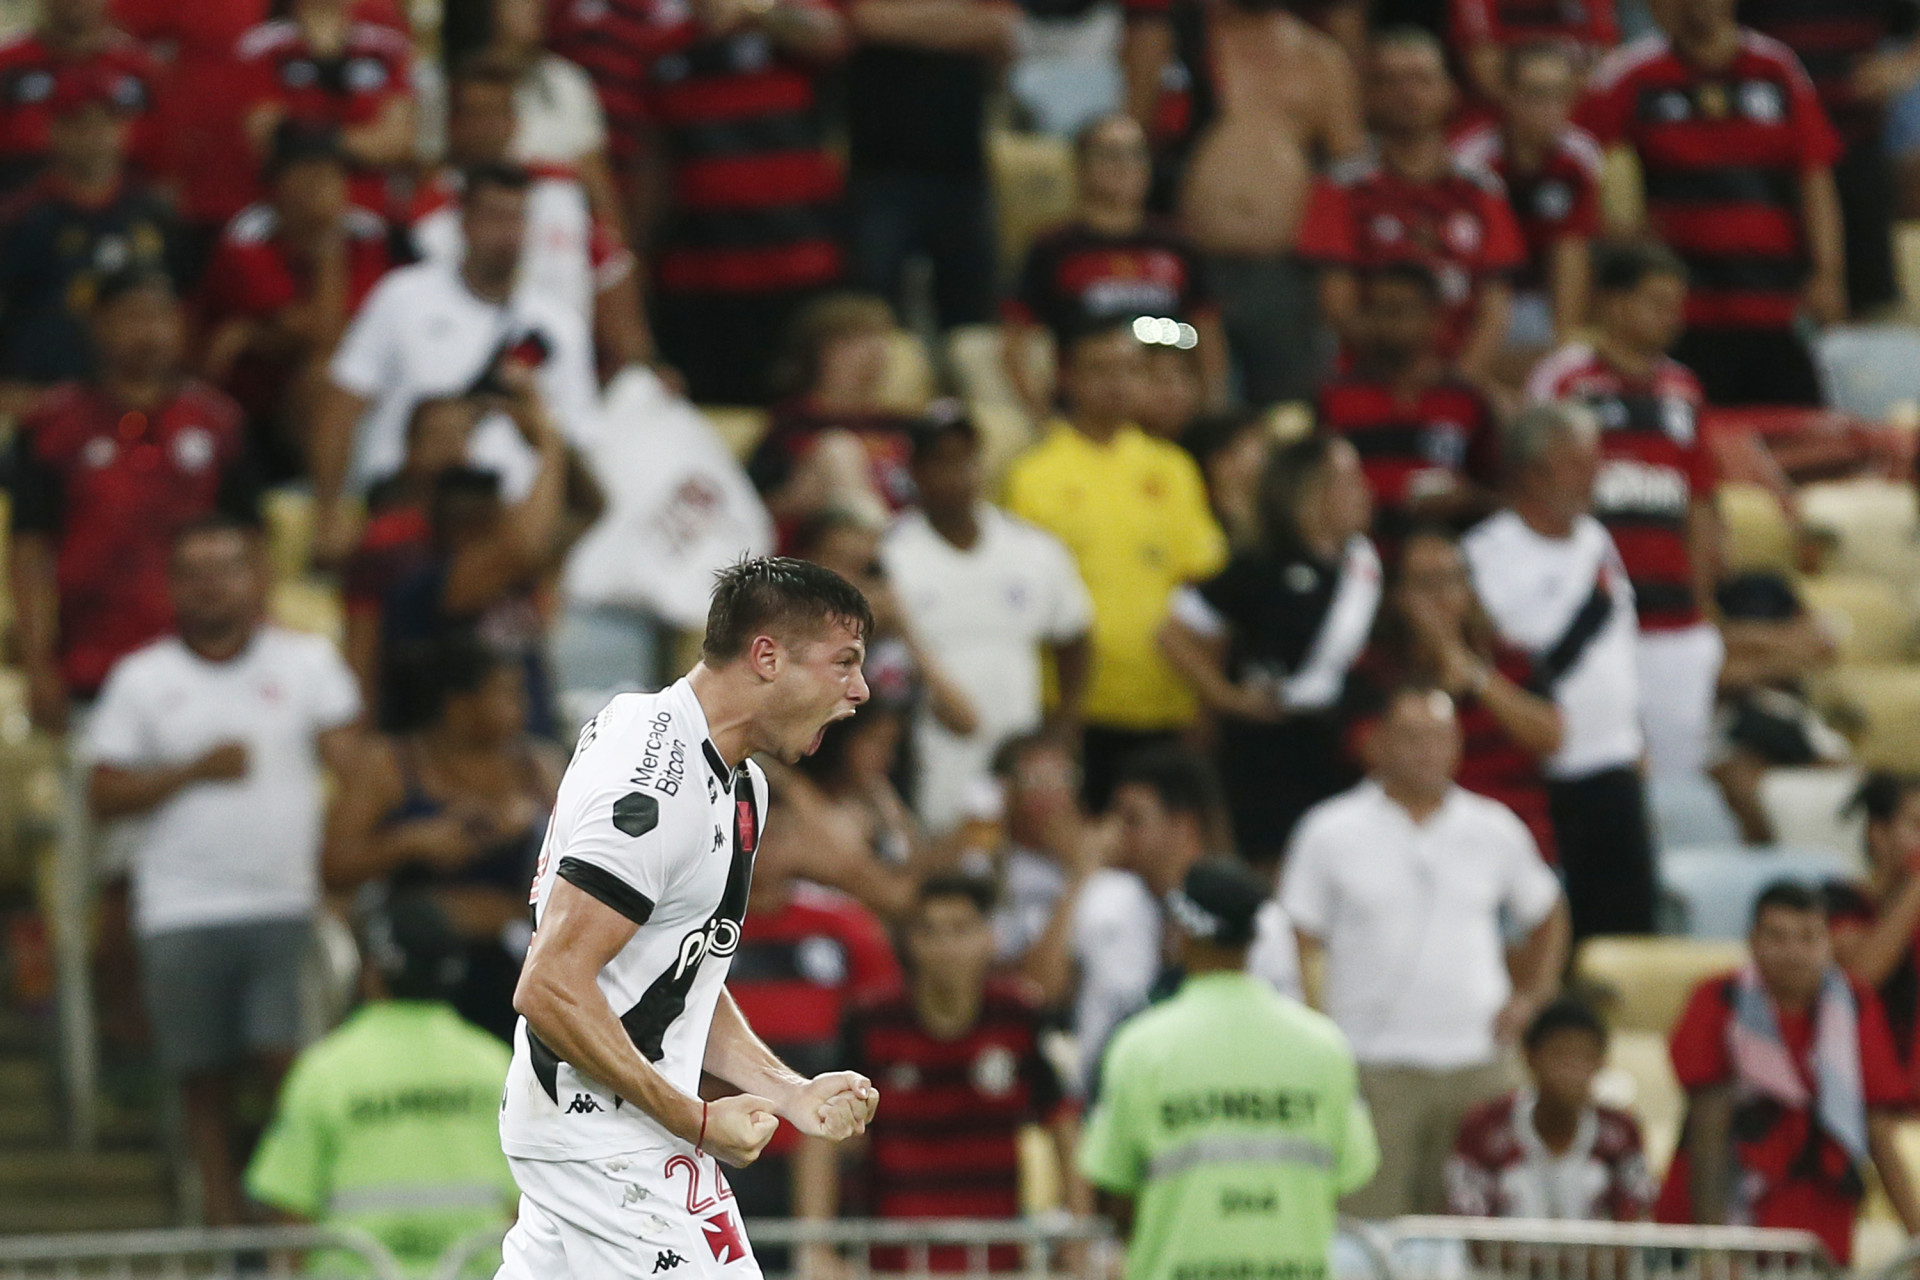 Foto mostra lance de Capasso que originou o pênalti do Flamengo